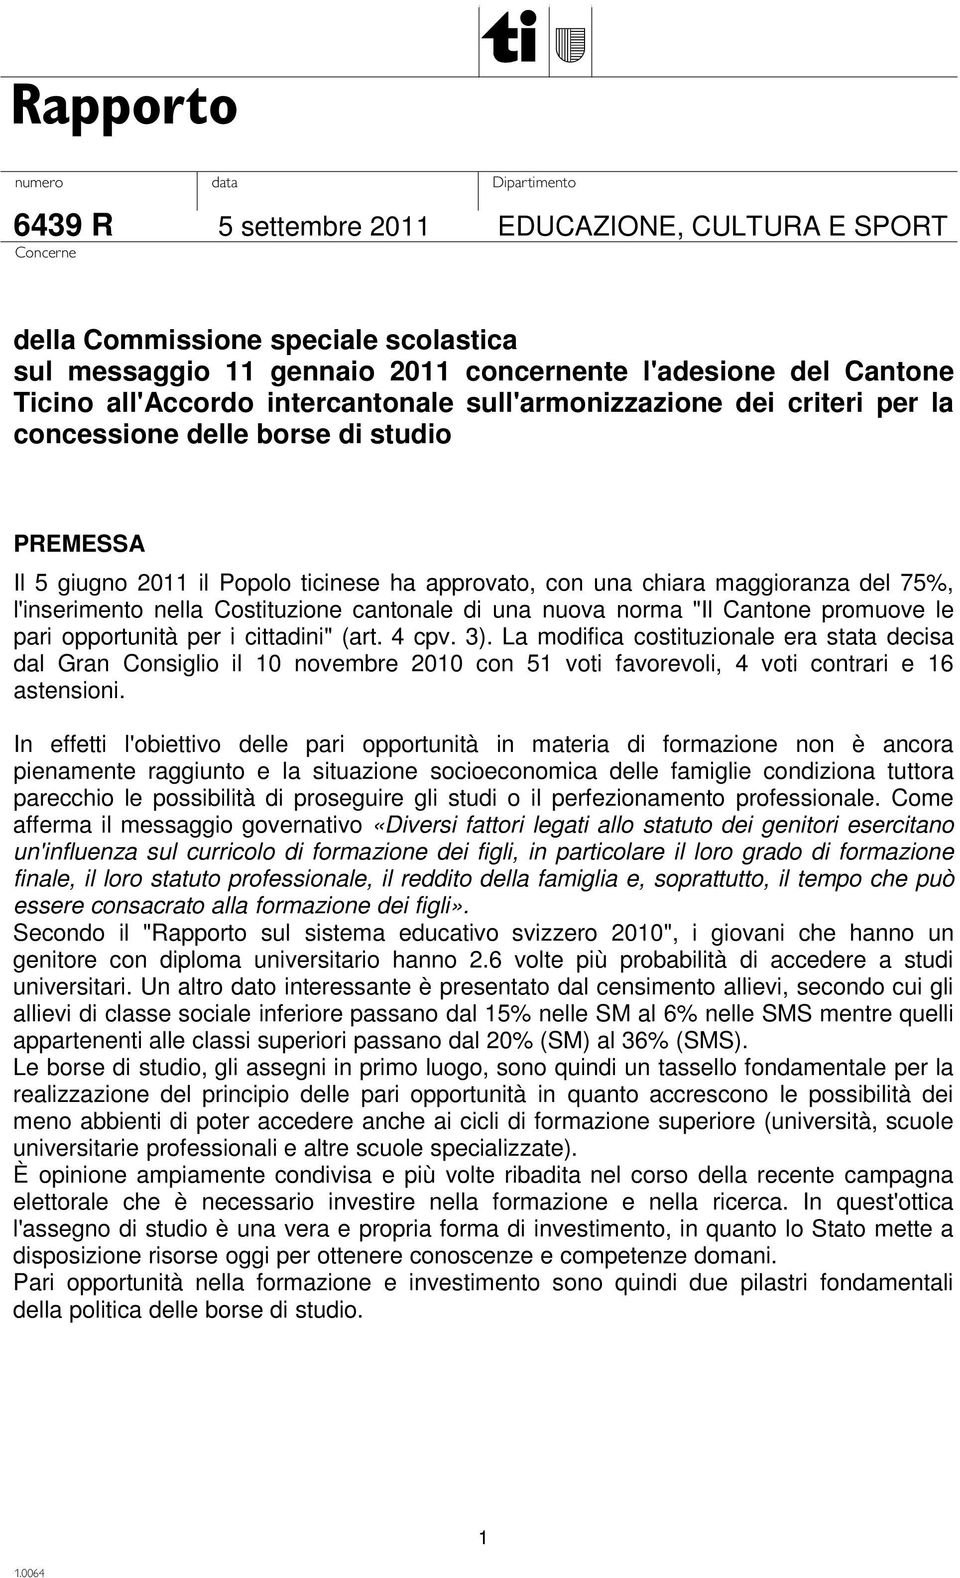 Costituzione cantonale di una nuova norma "Il Cantone promuove le pari opportunità per i cittadini" (art. 4 cpv. 3).